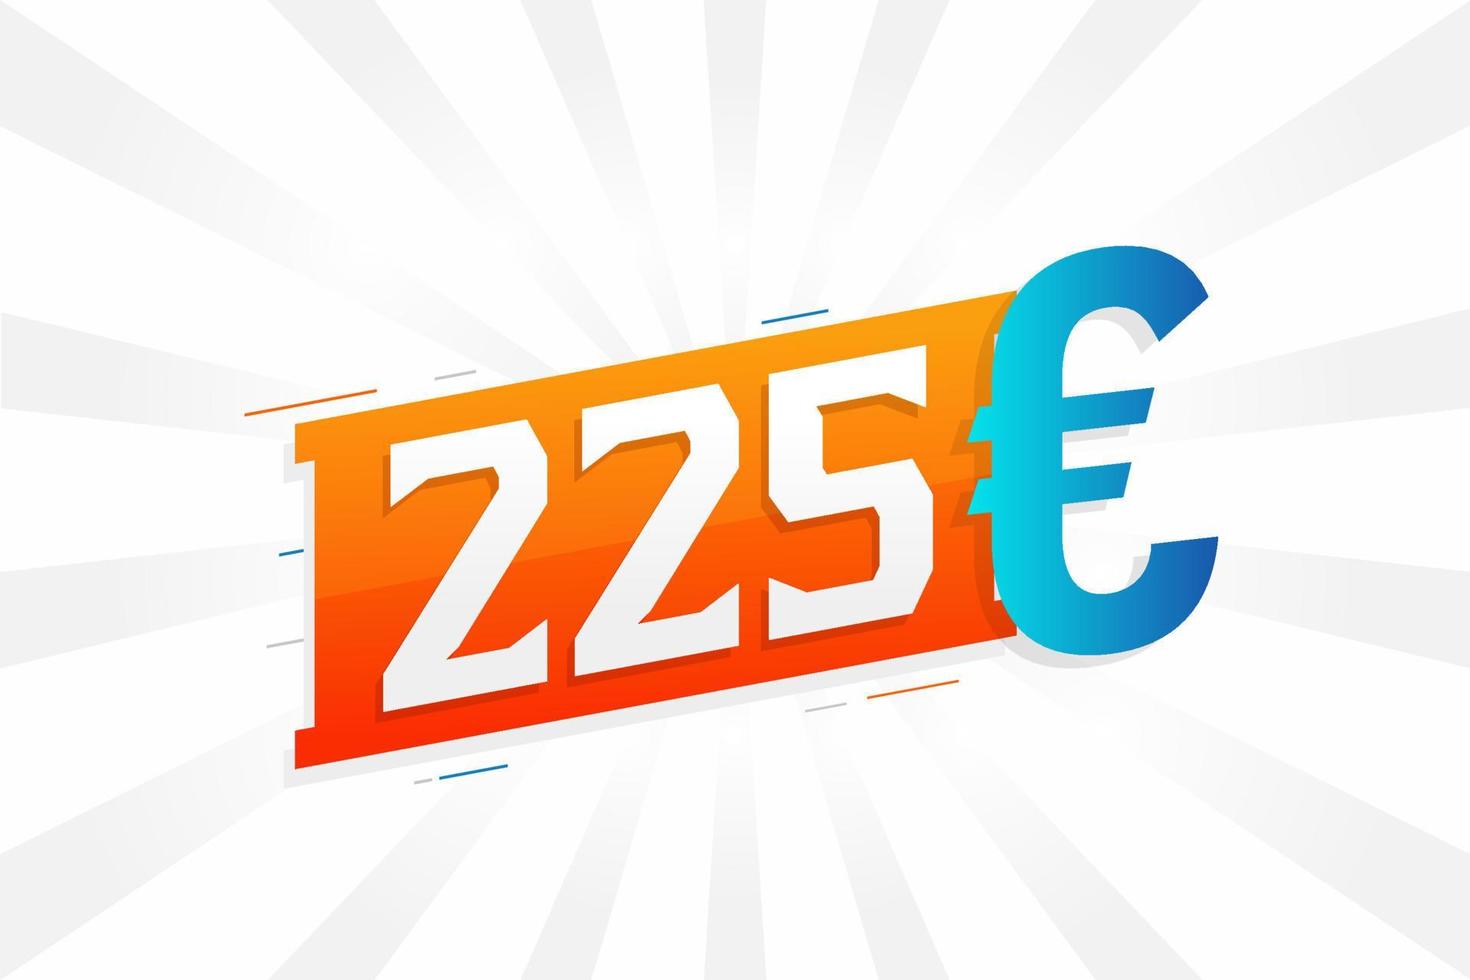 225-Euro-Währungsvektor-Textsymbol. 225 Euro Geldvorratvektor der Europäischen Union vektor